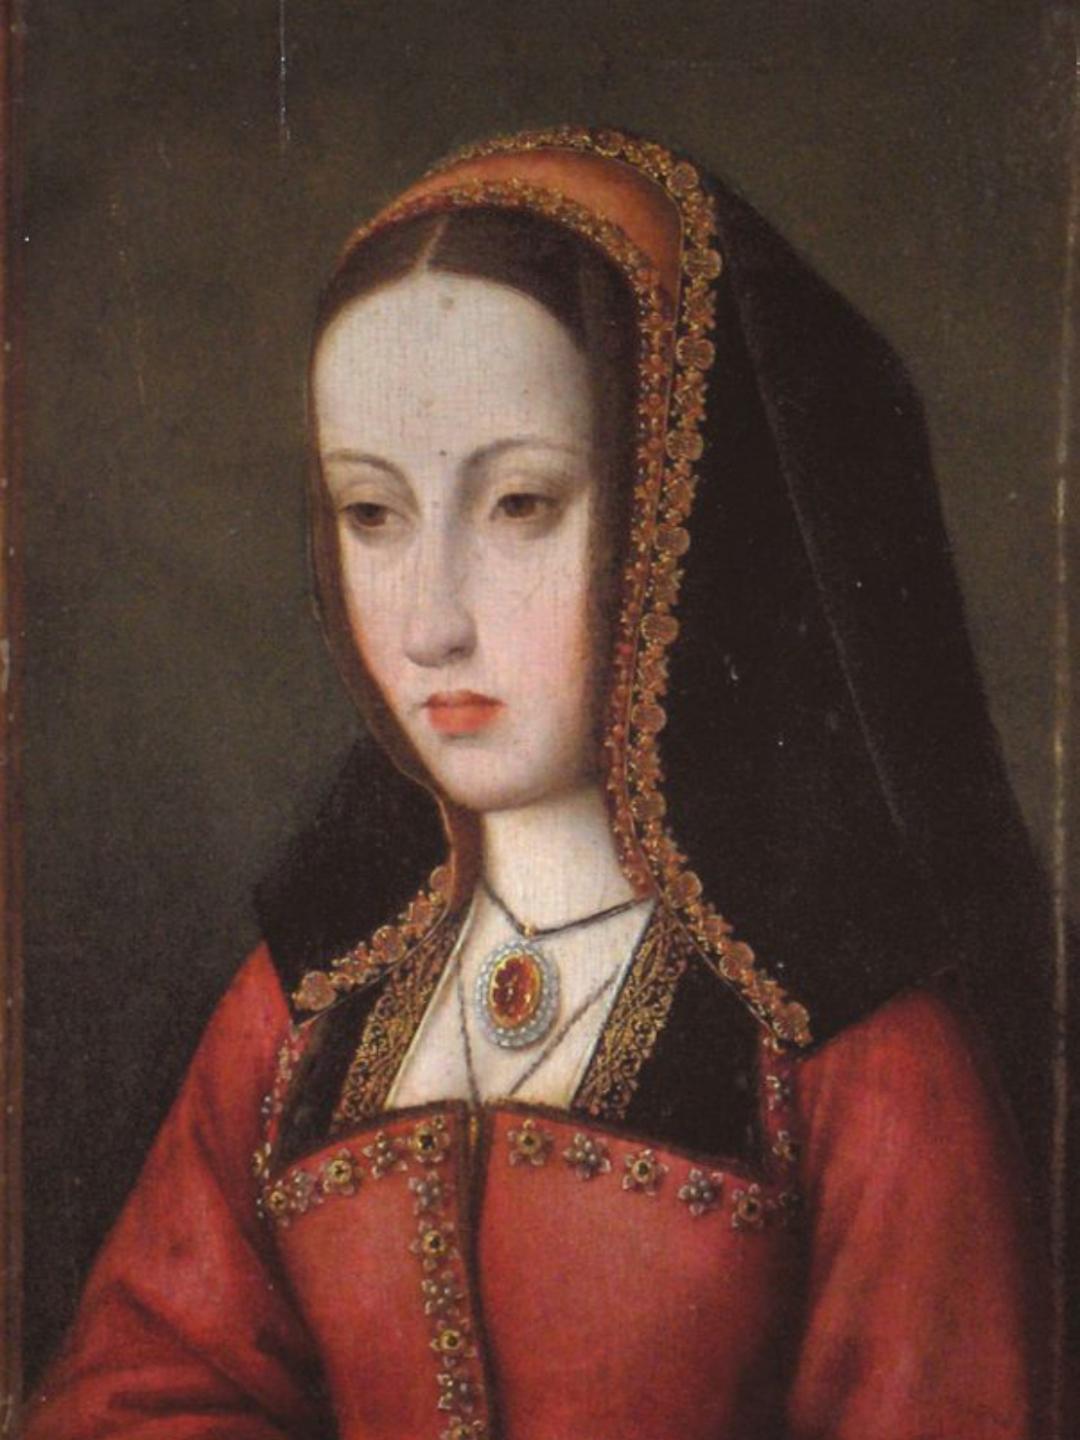 卡斯蒂利亚女王胡安娜(西班牙语:juana,1479年11月6日